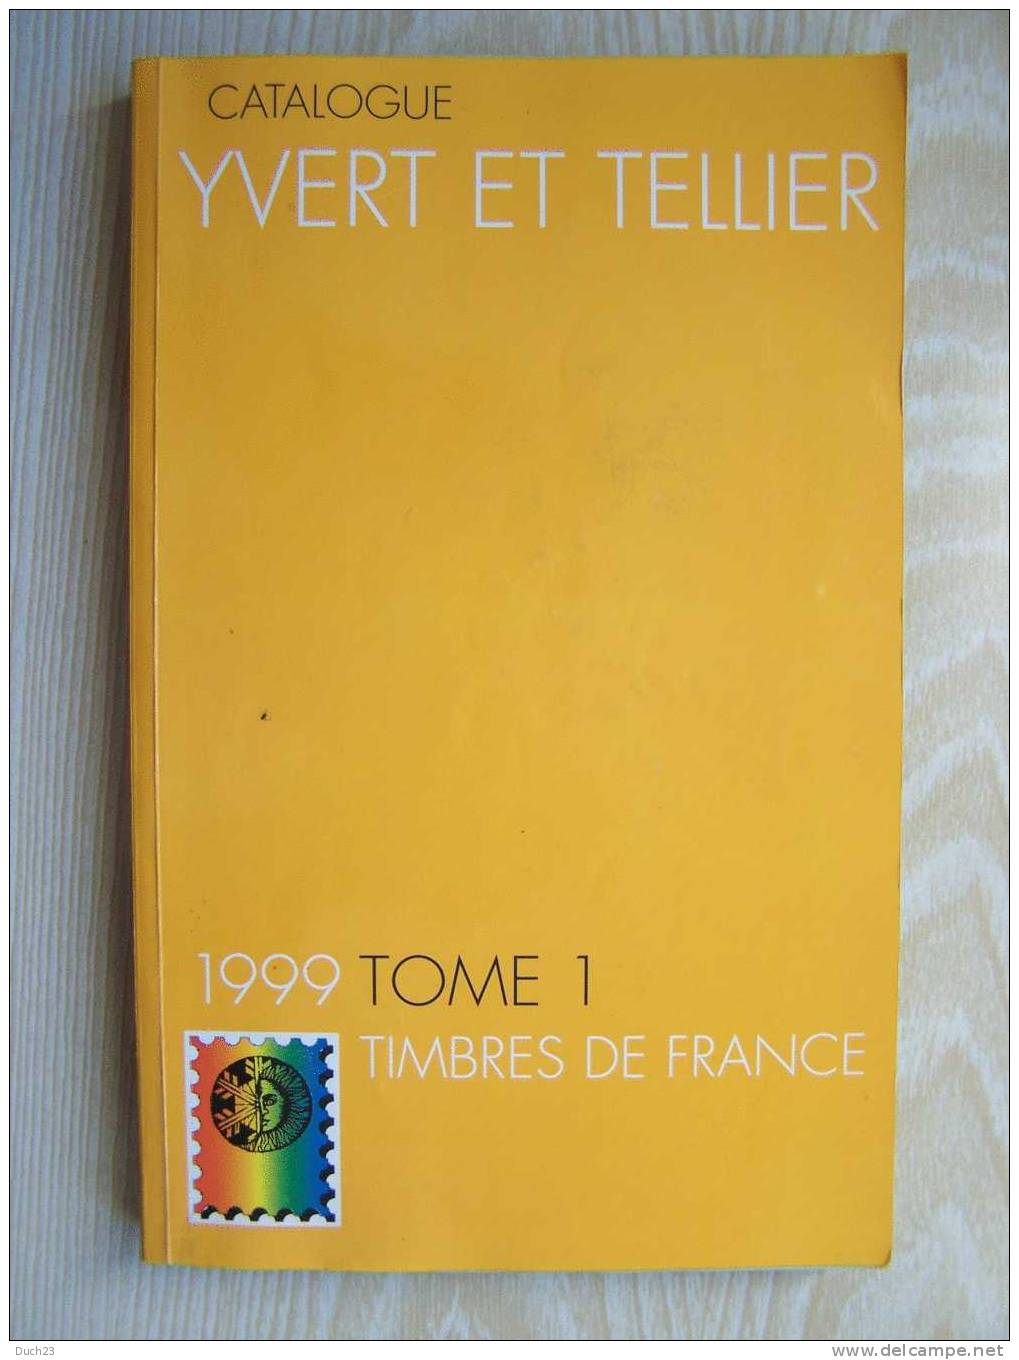 CATALOGUE DE COTATION YVERT ET TELLIER ANNEE 1999 TOME 1  TRES BON ETAT   REF CD - Frankrijk